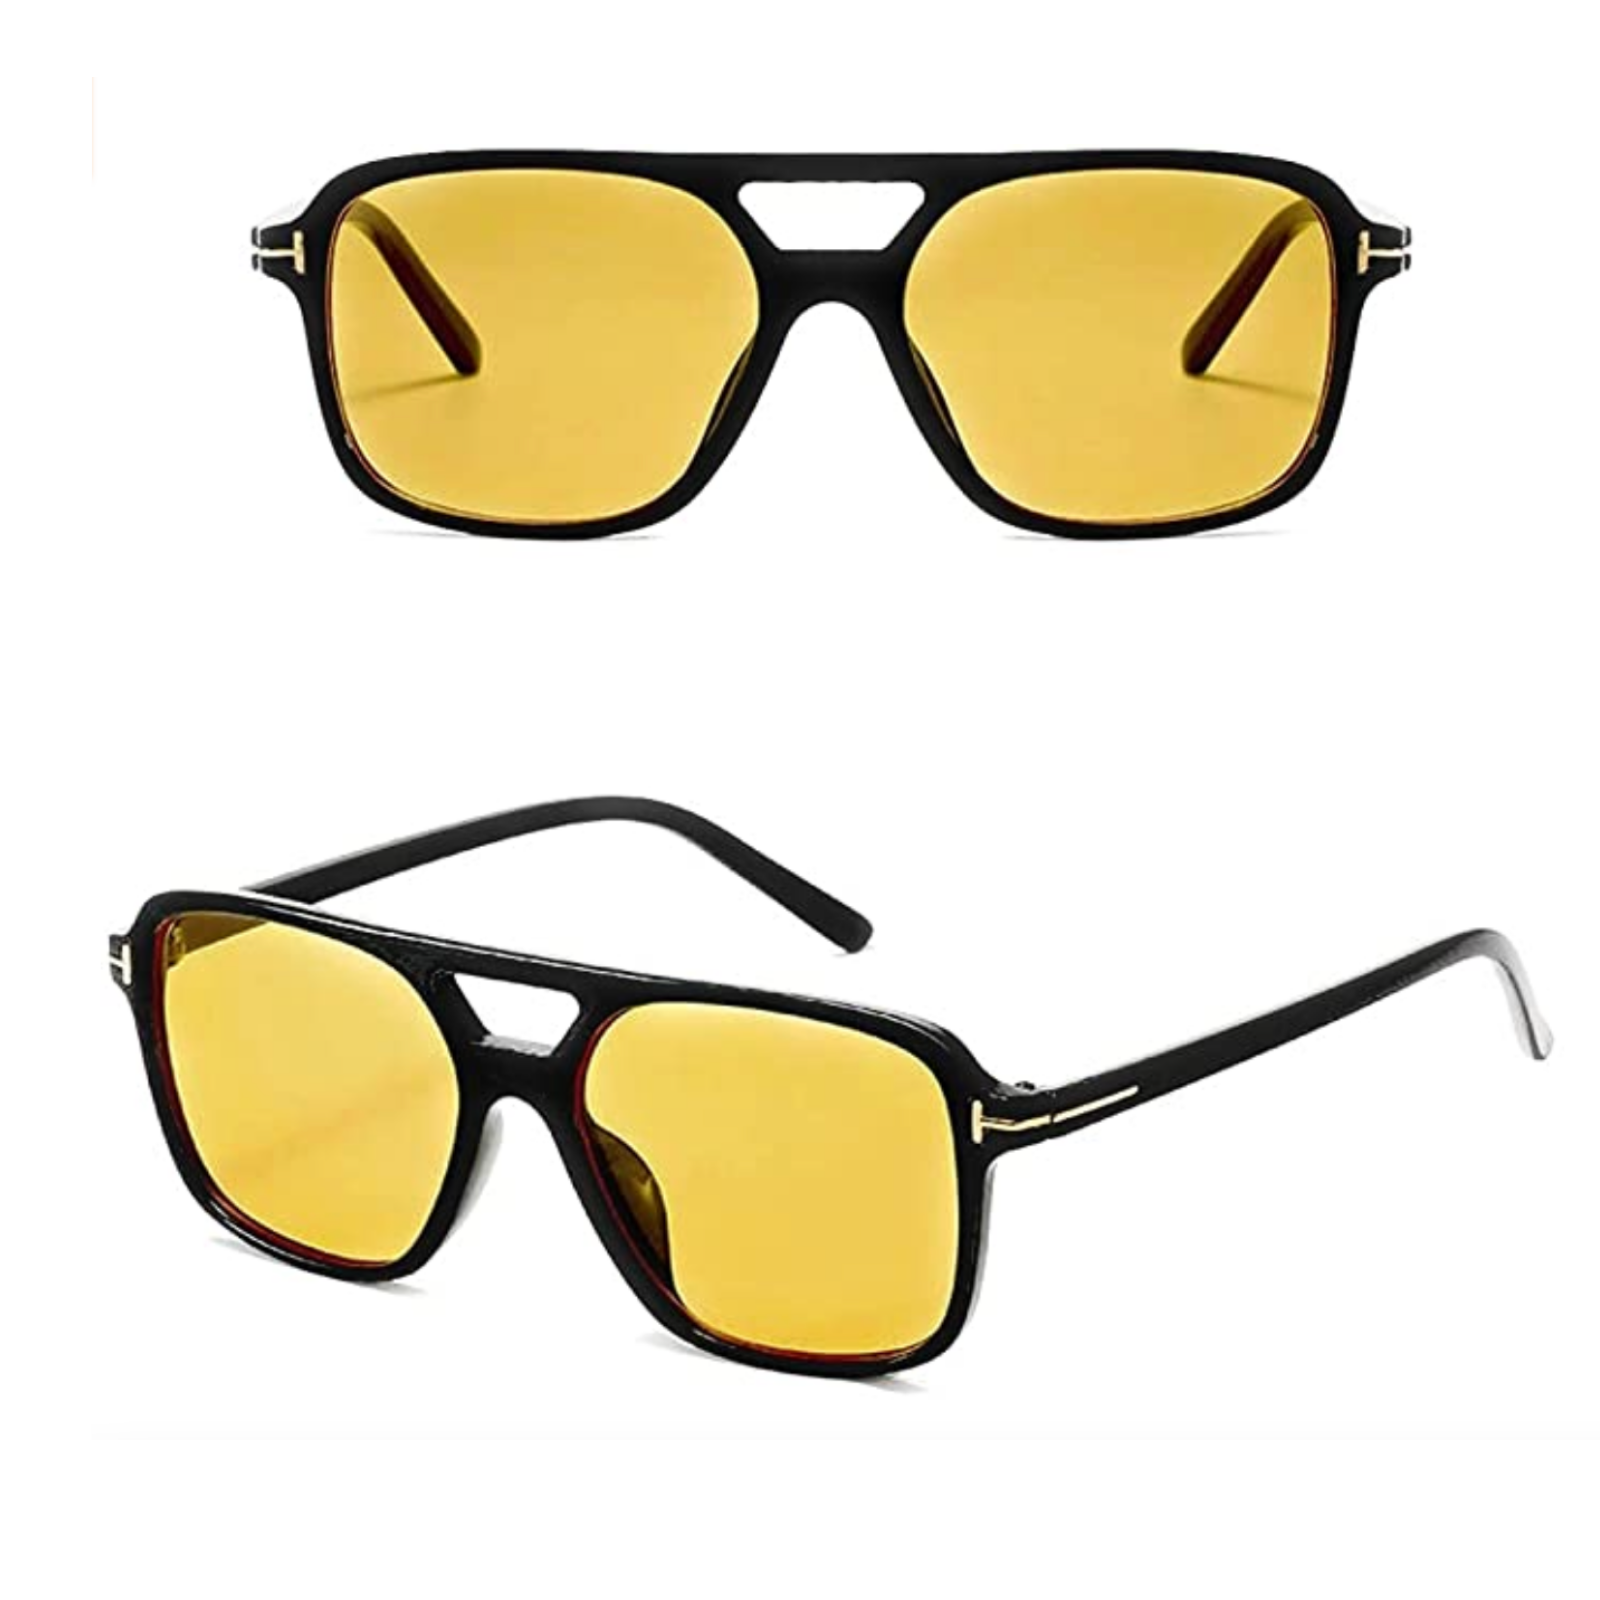 Tessa Orange / Yellow Aviator Sunglasses